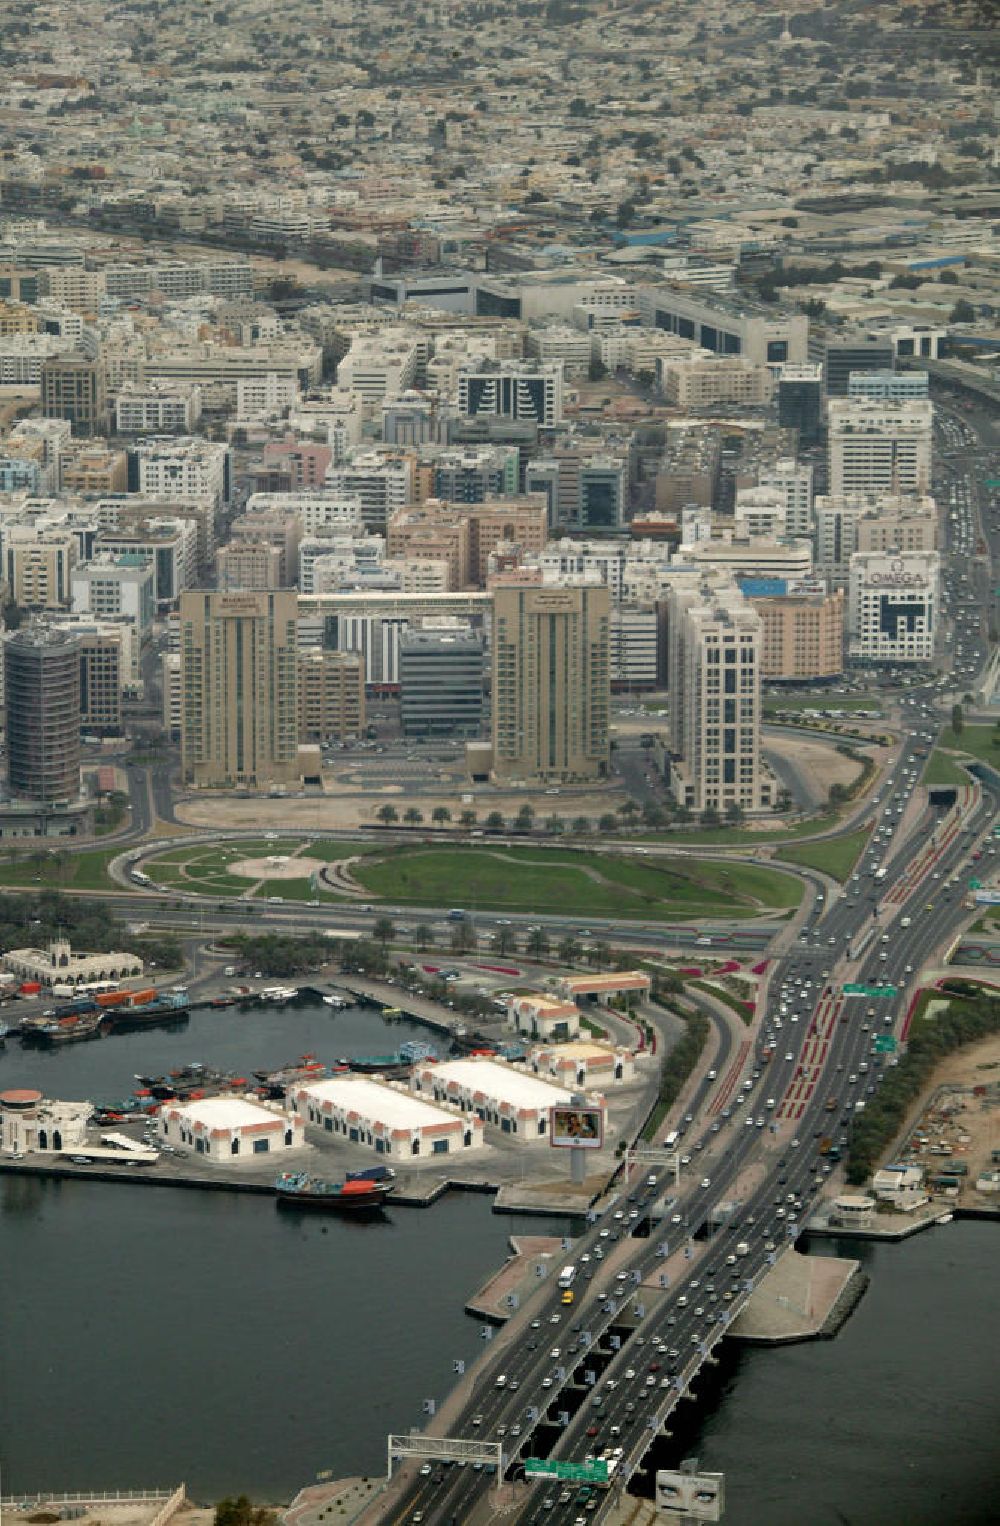 Dubai from above - Die Al Maktoum Brücke führt über den Dubai Creek. Der Dubai Creek ist ein natürlicher Meeresraum des Persischen Golfs, welcher die Stadt Dubai in die Stadtteile Bur Dubai und Deira teilt. Er ist 14 Kilometer lang und hat eine Breite von 115 Metern an der Mündung bis zu 1400 Metern an seinem Ende. Der Creek war einst das Zentrum der Stadt und der wichtigste Hafen. Im Vordergrund ist links das Hilton zu sehen. Die Al Maktoum Bridge ist e?